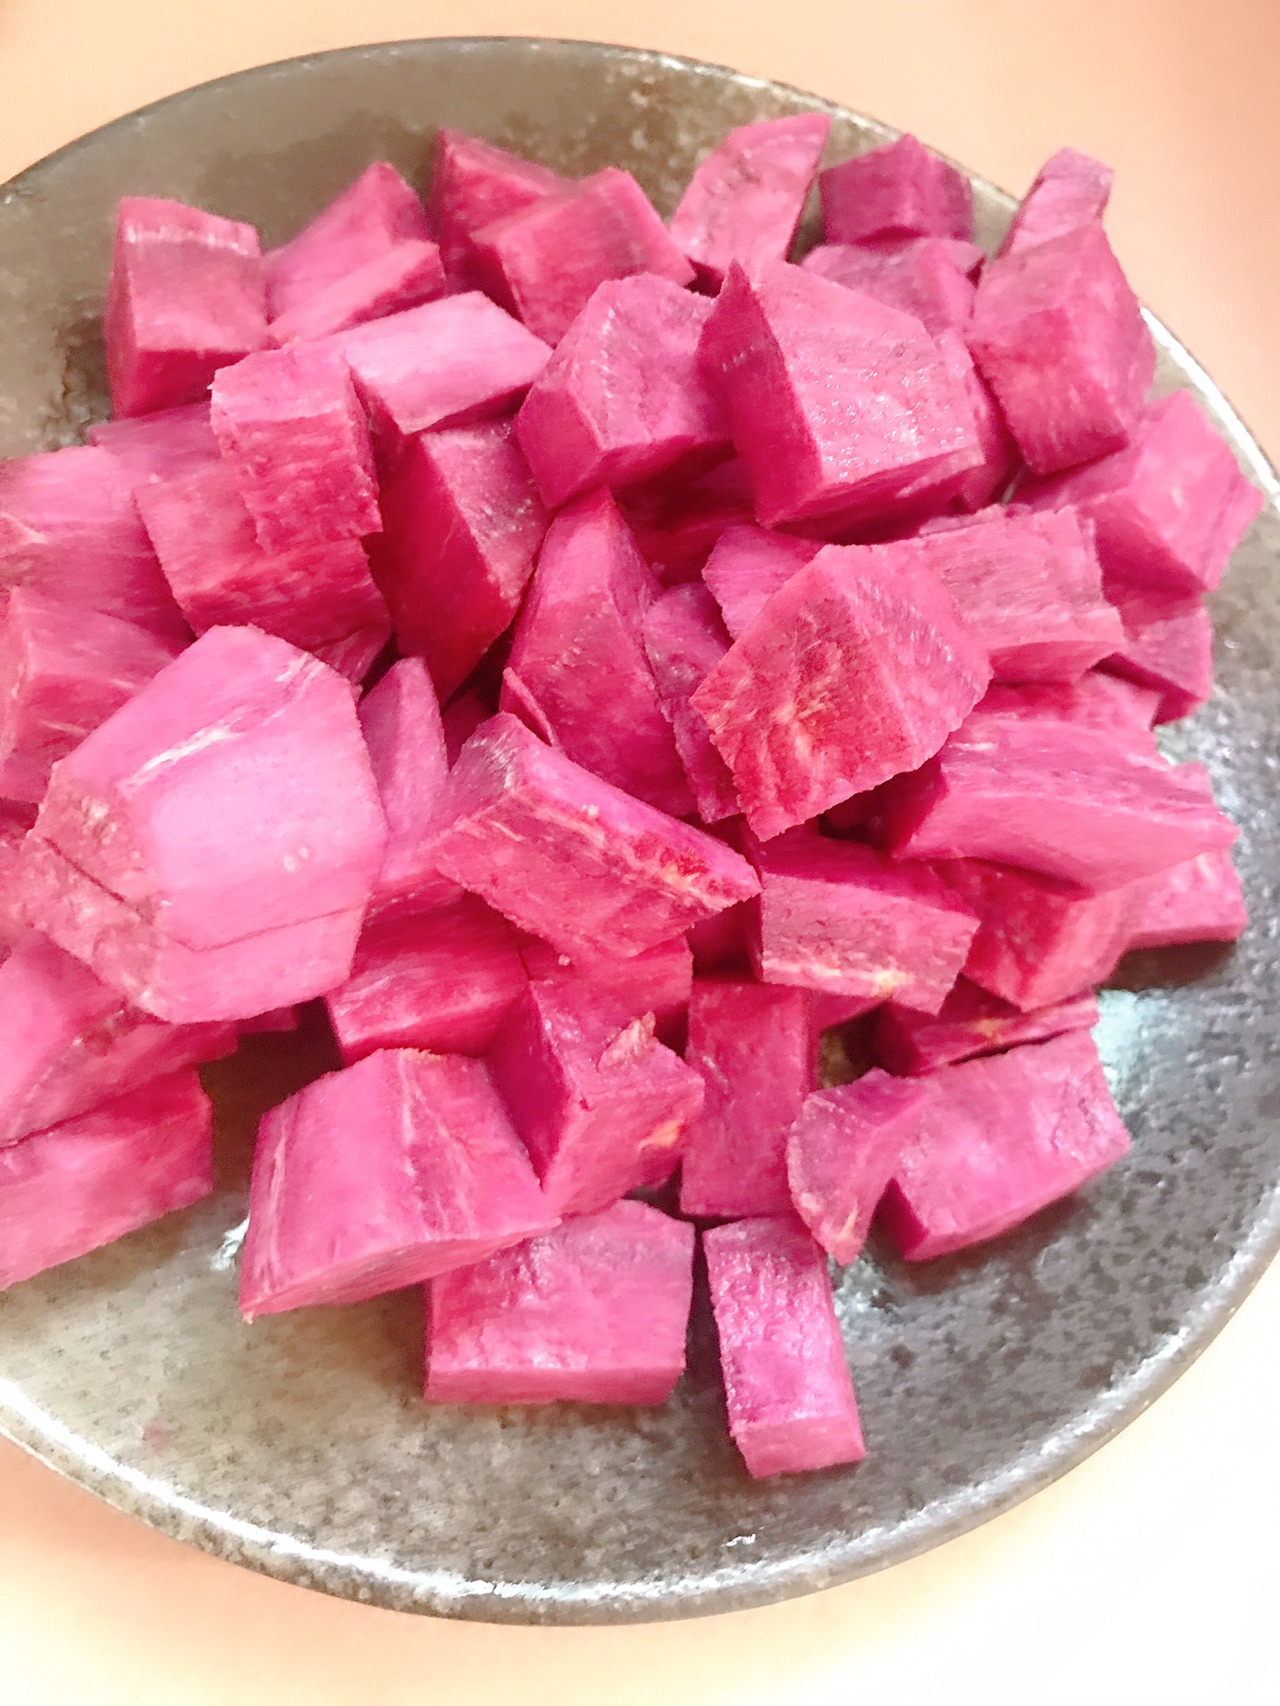 奶香紫薯馒头（一次性发酵）的做法步骤图 - 君之博客|阳光烘站